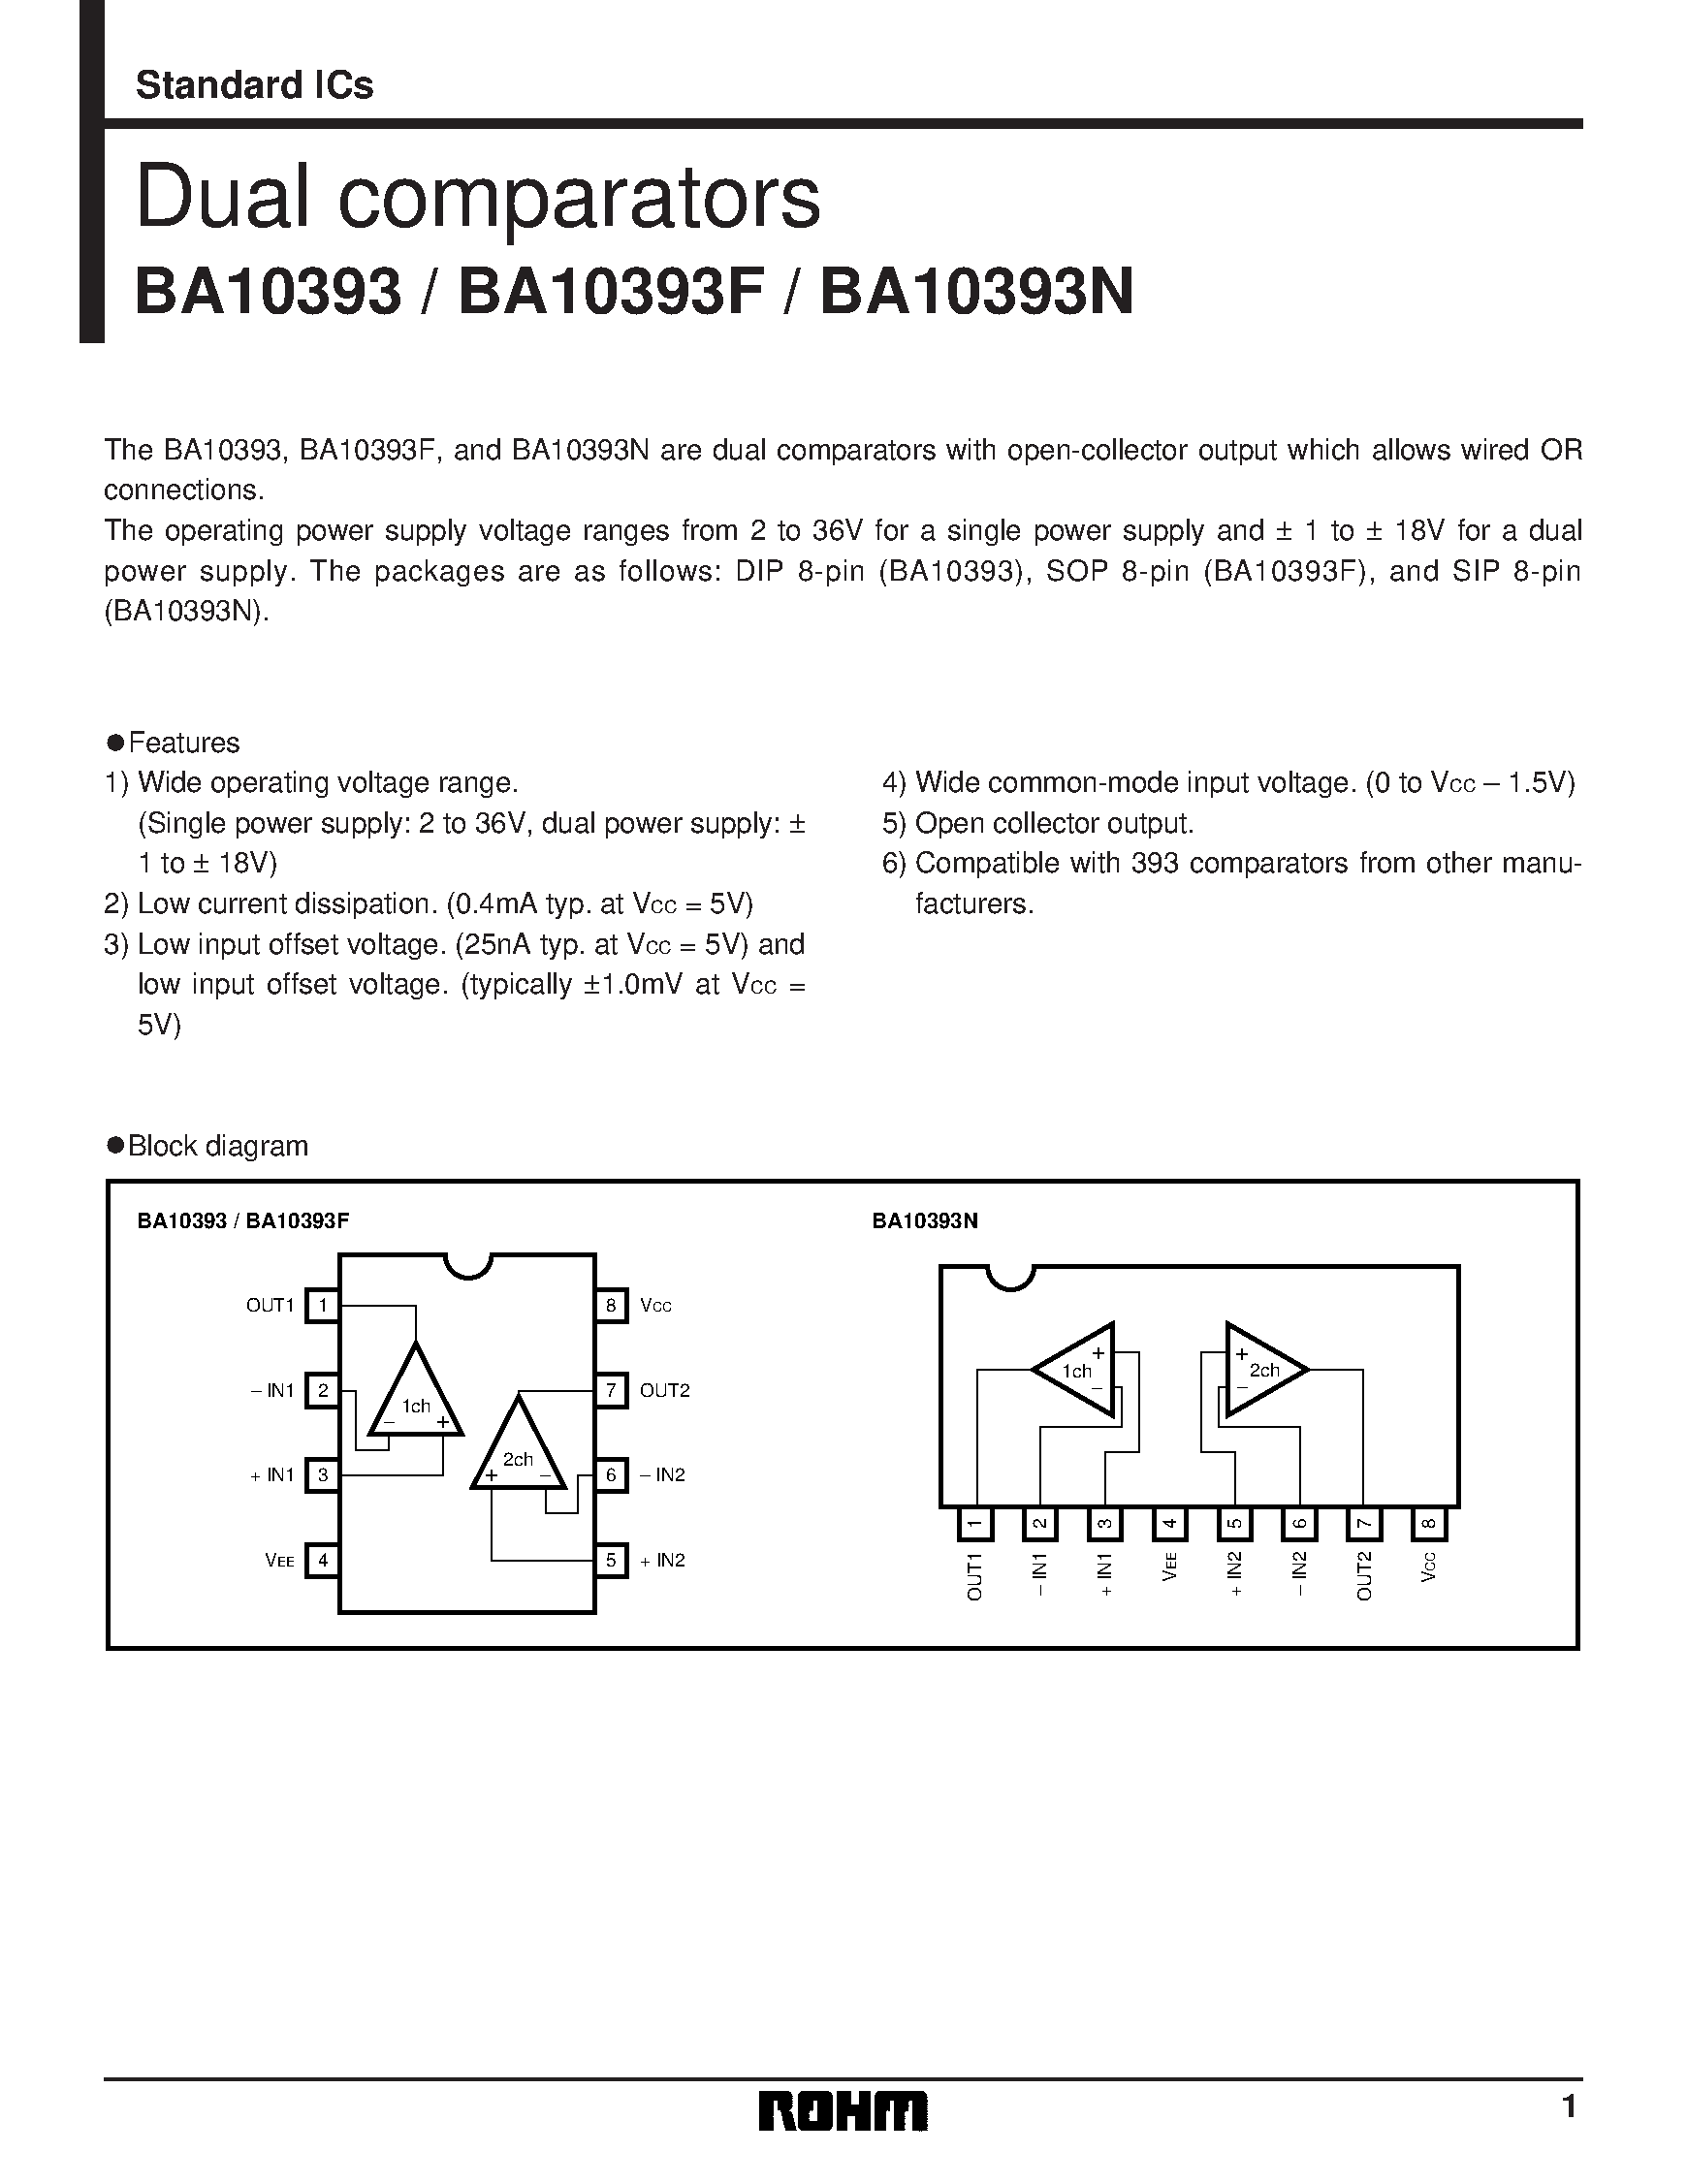 Даташит BA10393F - Dual comparators страница 1